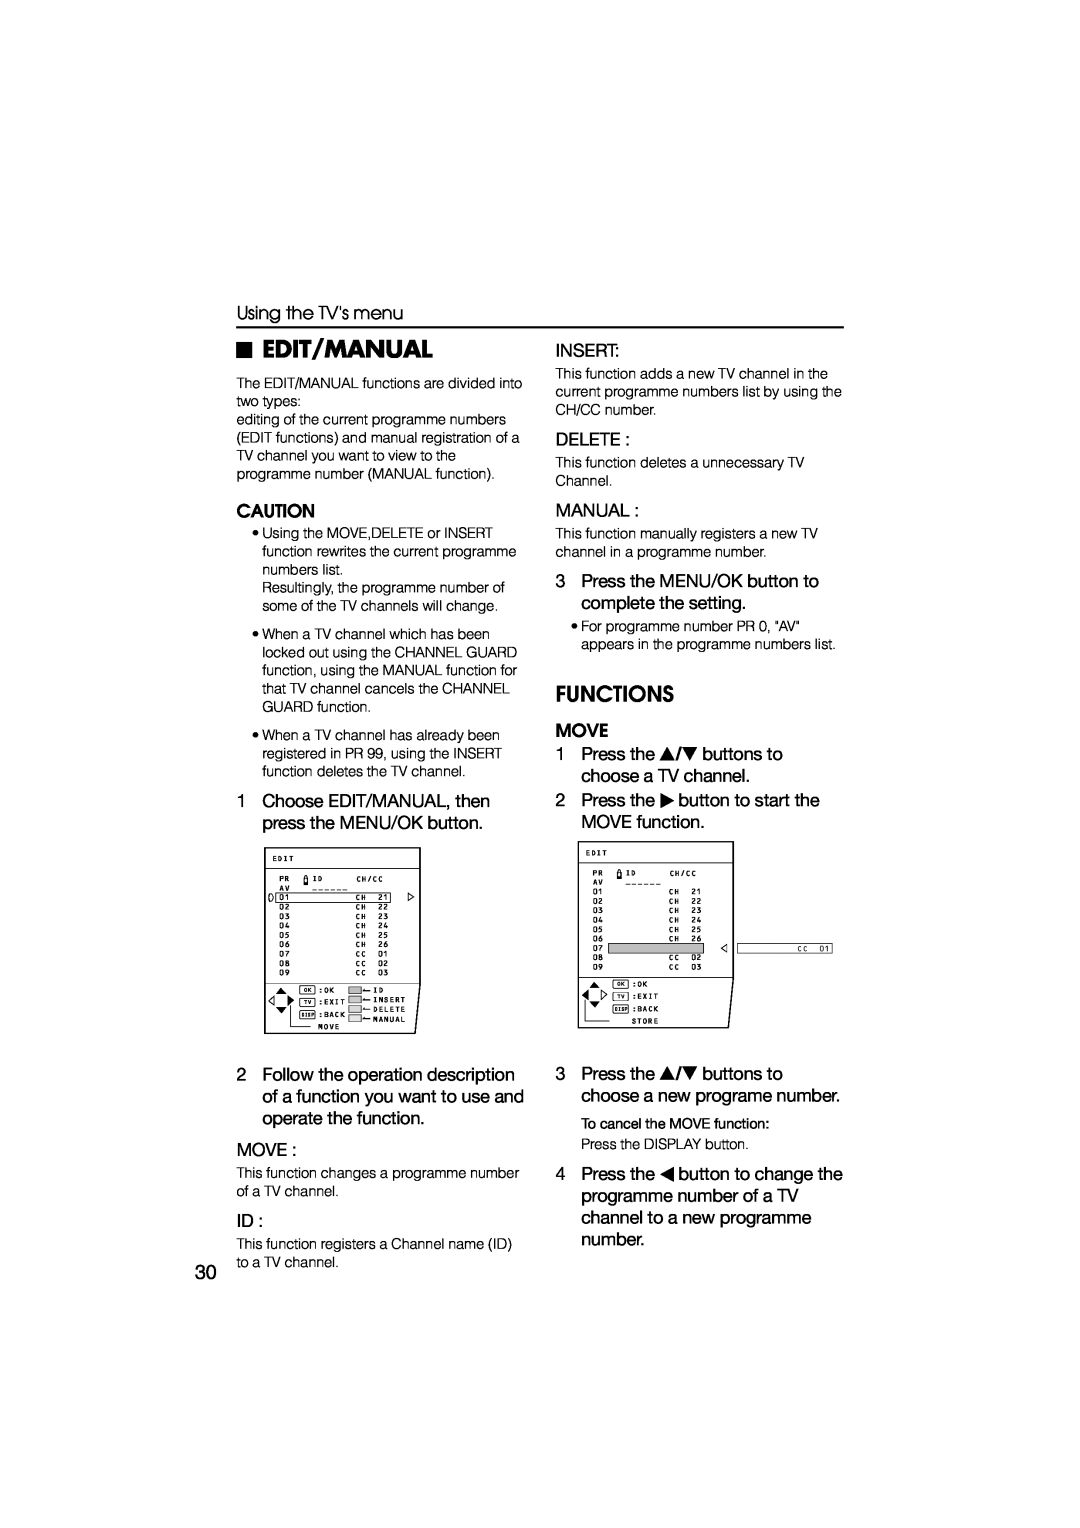 JVC HV-L34PRO, HV-L29PRO manual Edit/Manual Insert, Functions 